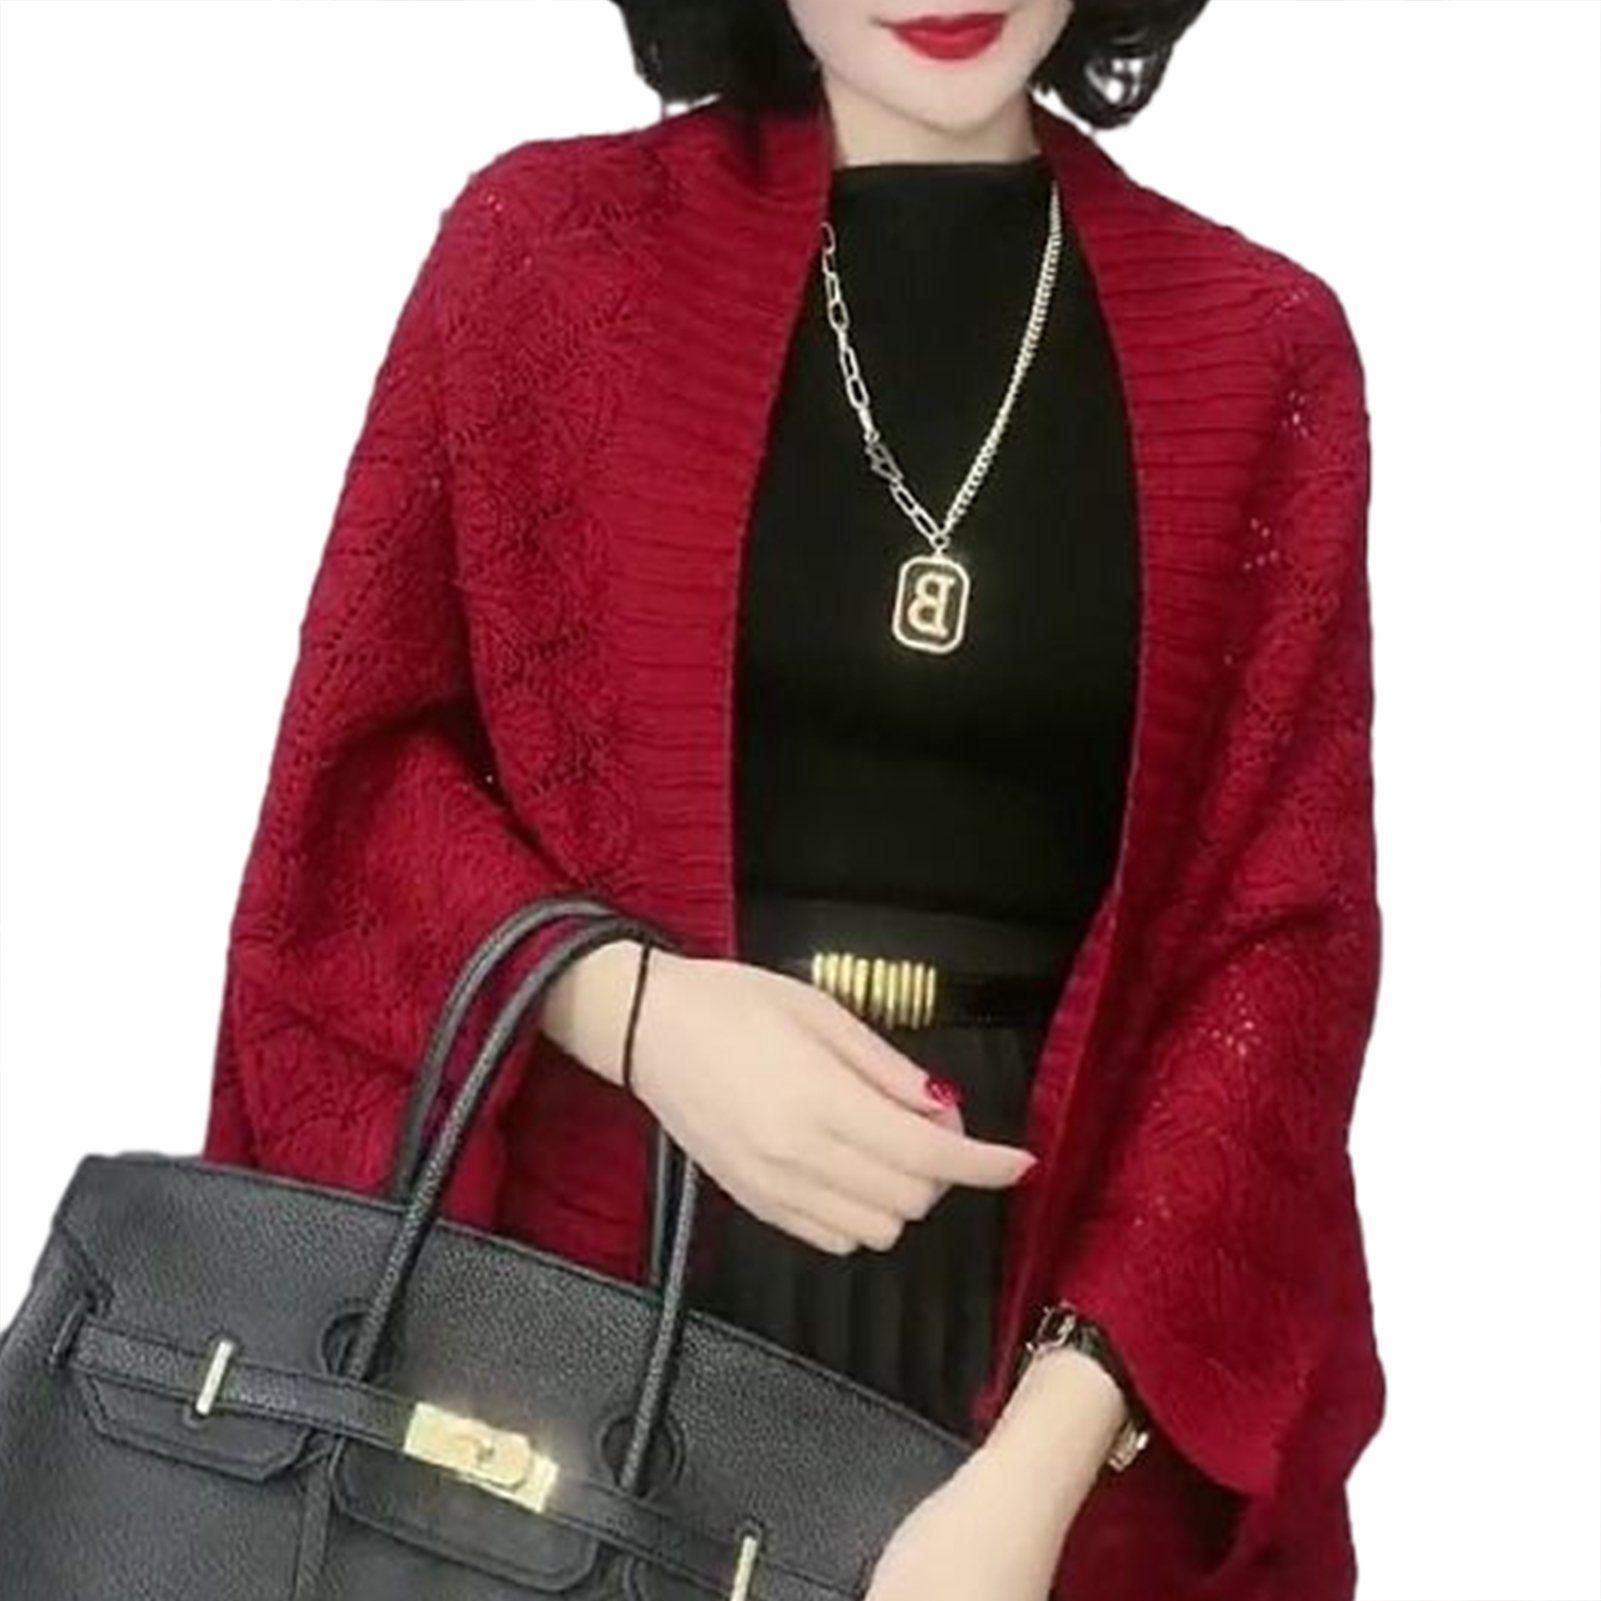 [Die neuesten Artikel im Ausland kaufen] Blusmart Schal Damen Schal Rotwein Out Vielseitiger Für, Hollow Kurzer Diamond Knitting Schal